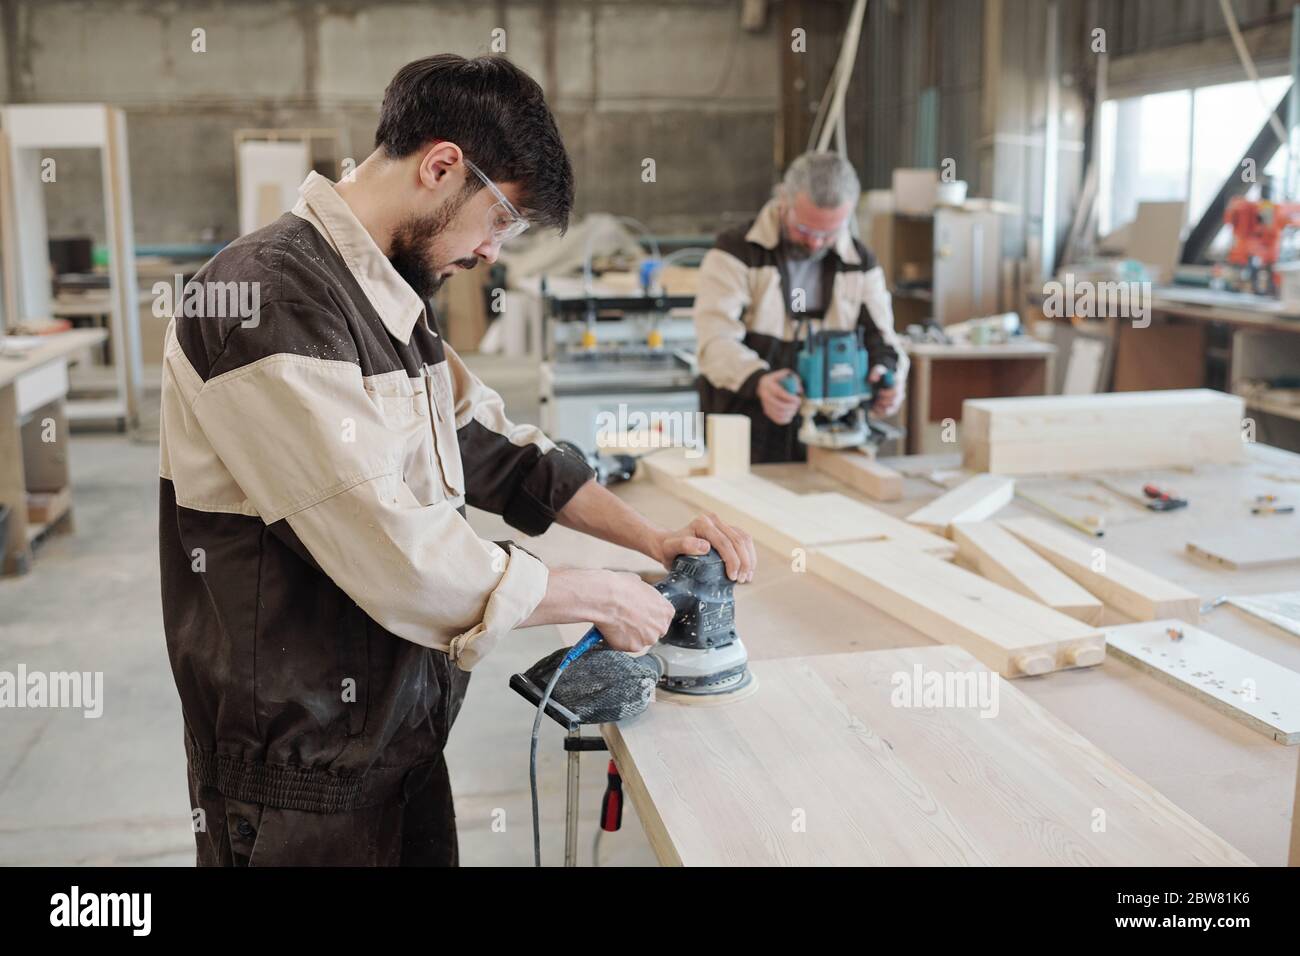 Jeune ouvrier d'usine utilisant une meuleuse pour rendre la surface de la pièce lisse et préparer le bois en vue d'un traitement ultérieur Banque D'Images